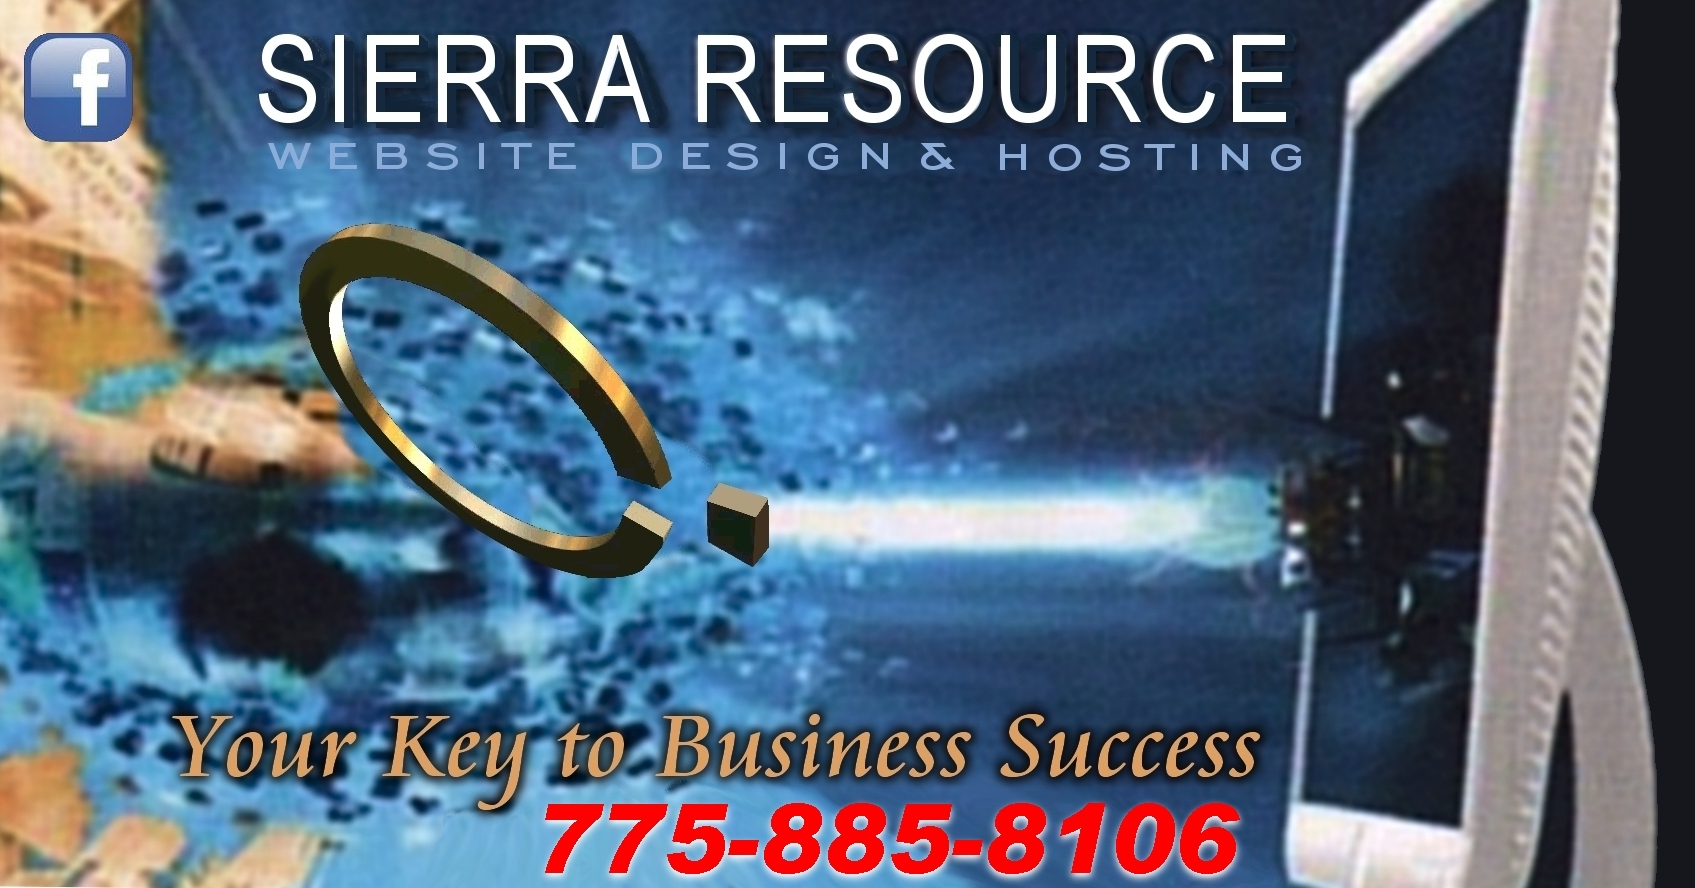 Sierra Resource